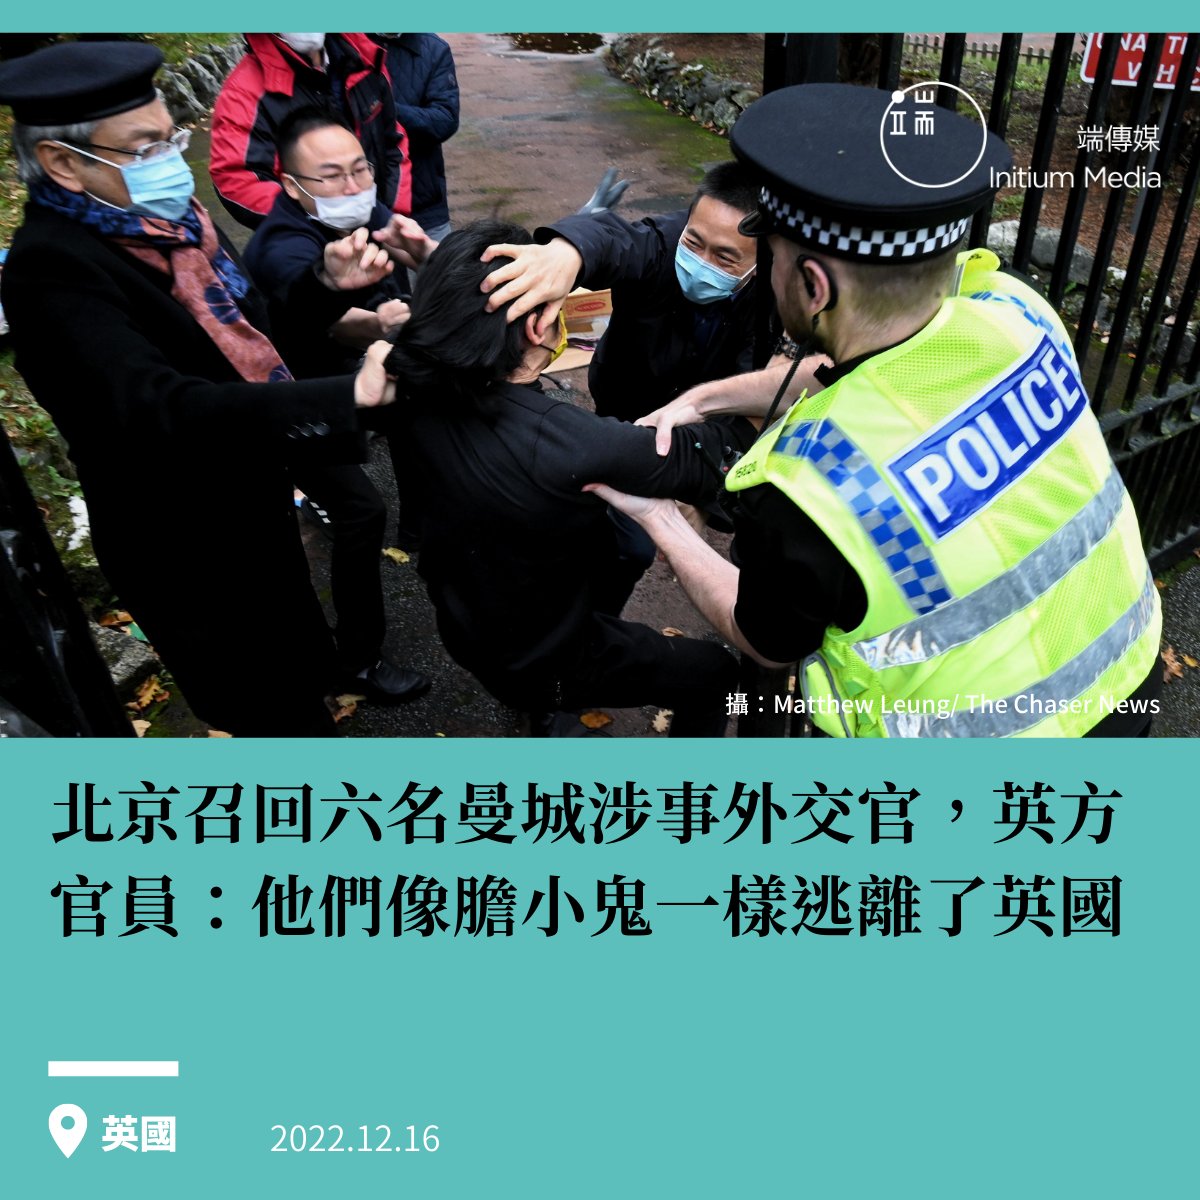 本週三（14日），據BBC報道，在中國駐曼徹斯特總領館外發生抗議者遭攻擊時間兩月后，北京召回了六名涉事外交官，包括駐曼徹斯特總領事鄭曦原。中國駐英國大使館發言人在當日答記者問時回應稱，「中國駐曼徹斯特總領事任期已滿，不久前已奉調回國，這是中方正常的人員輪換